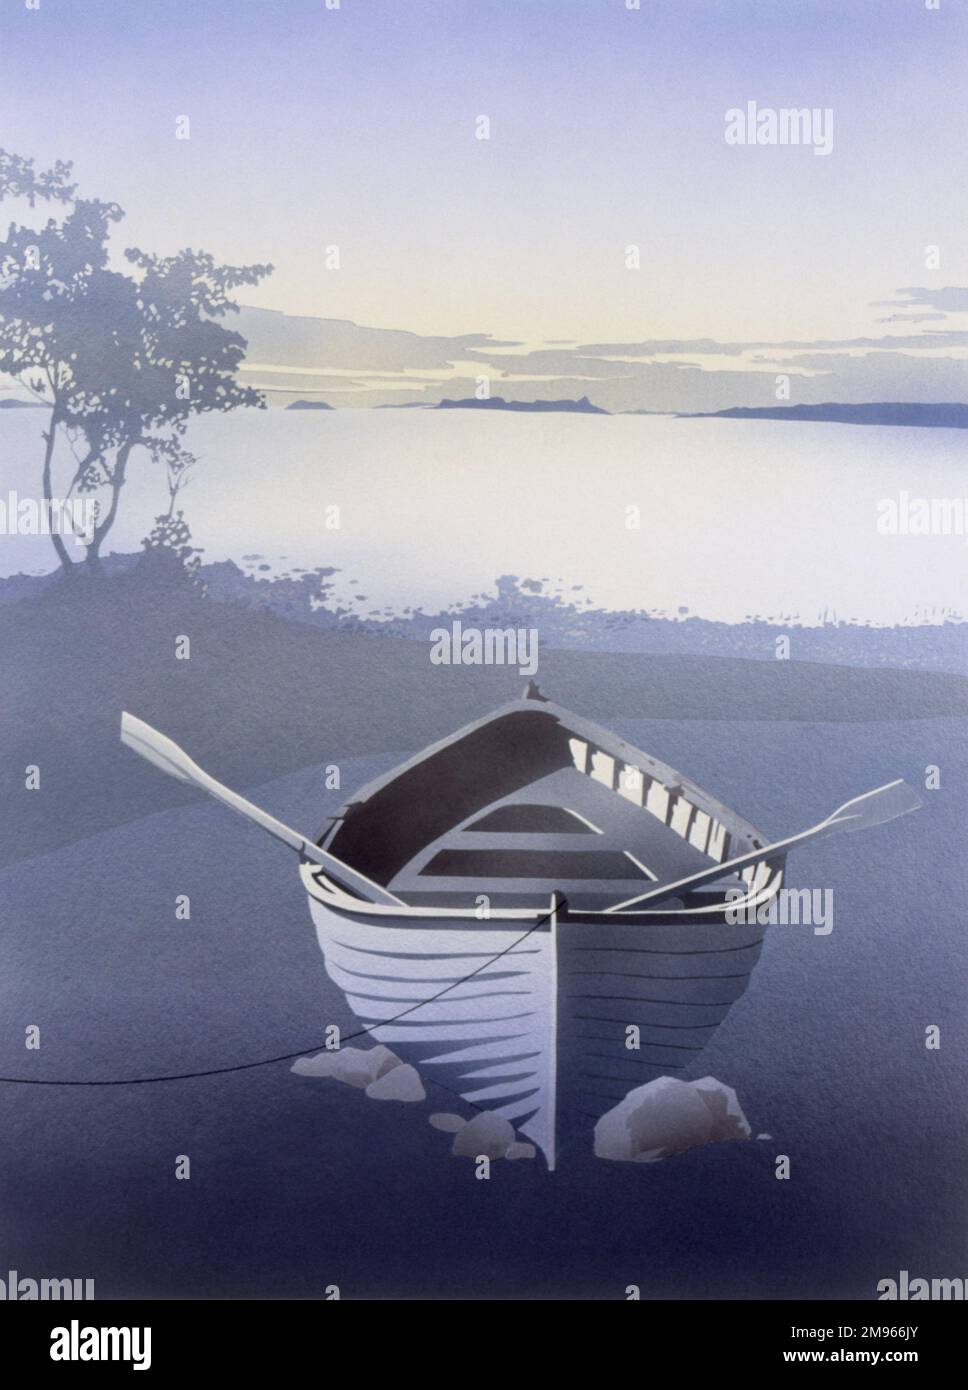 Solitude. Un bateau à rames vide avec des verrats reposant sur les côtés, repose sur quelques petites roches près d'un grand lac, éclairant dans la lumière du soir. Une peinture aérographe de Malcolm Greensmith. Banque D'Images